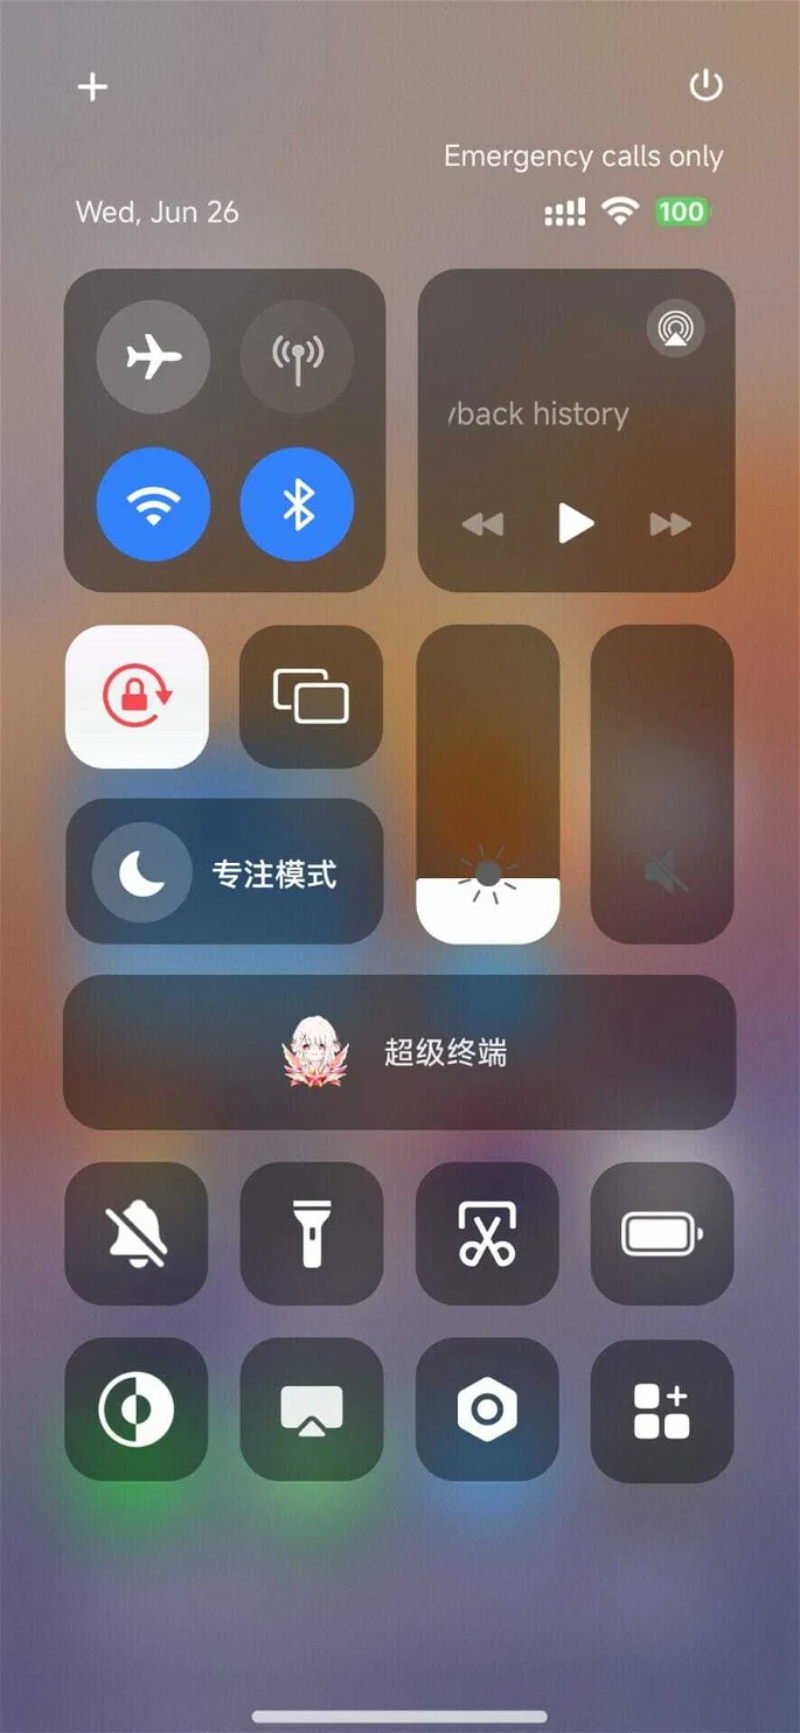 Xiaomi sao chép thiết kế iOS vào HyperOS - Hình 1.